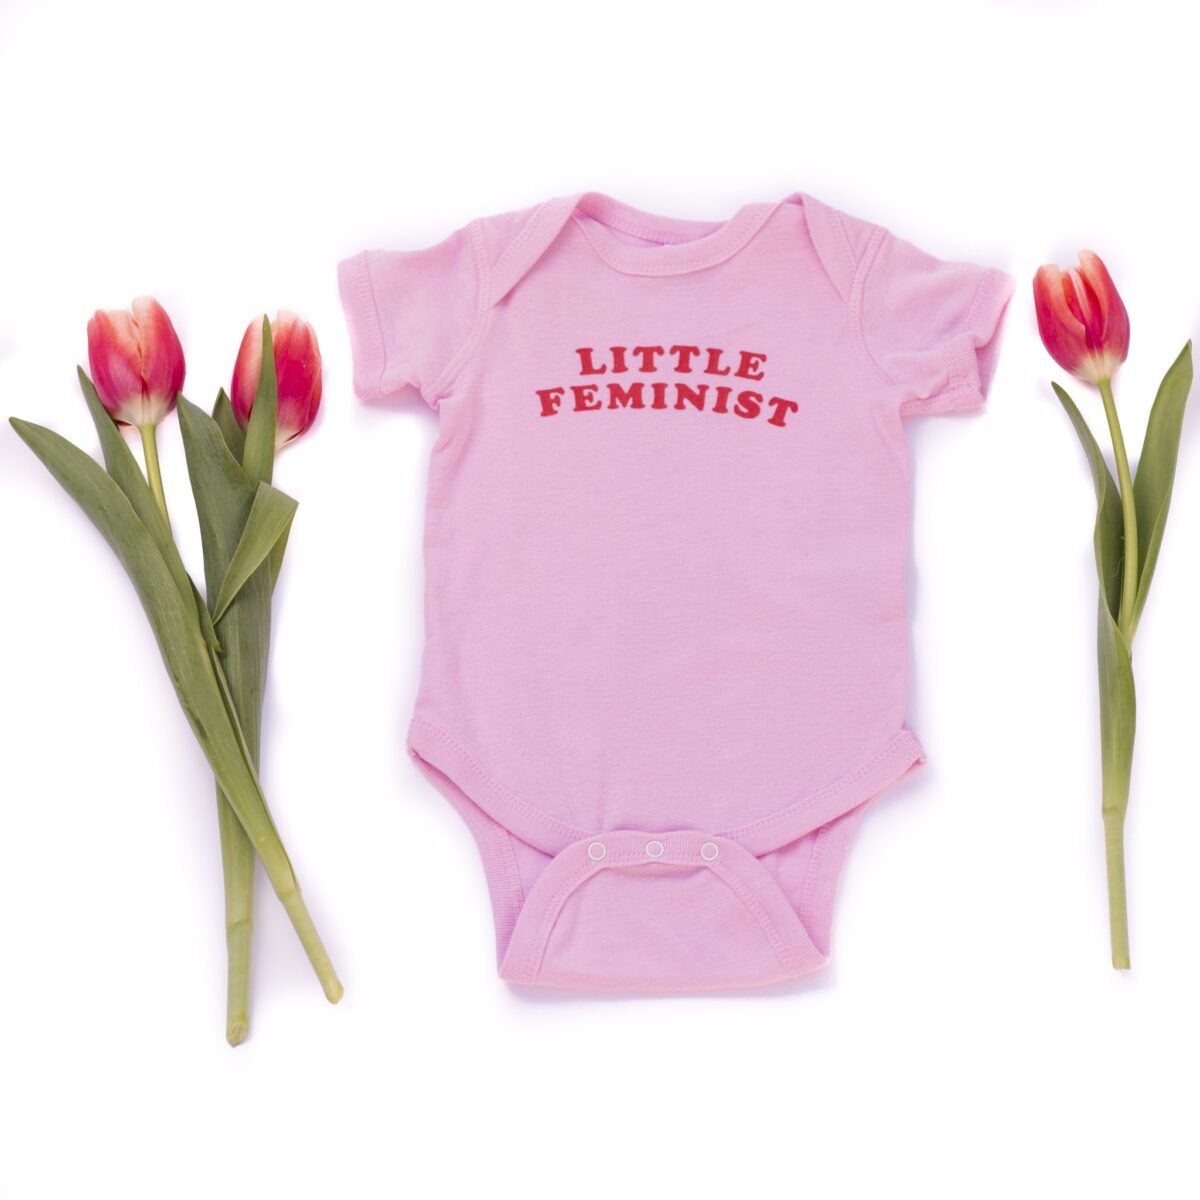 Little Feminist pink onesie